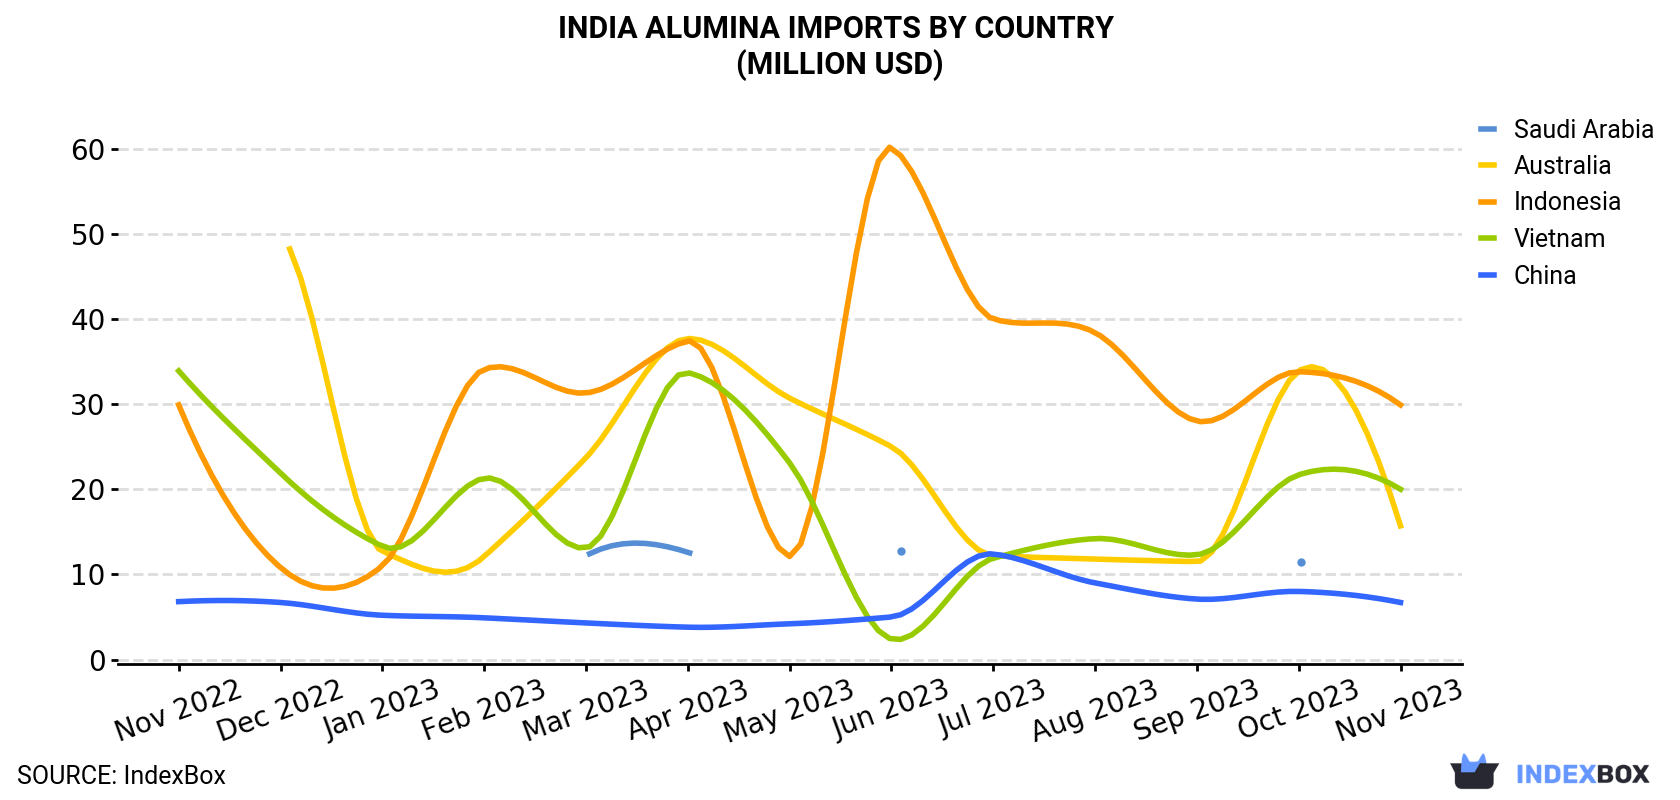 India Alumina Imports By Country (Million USD)